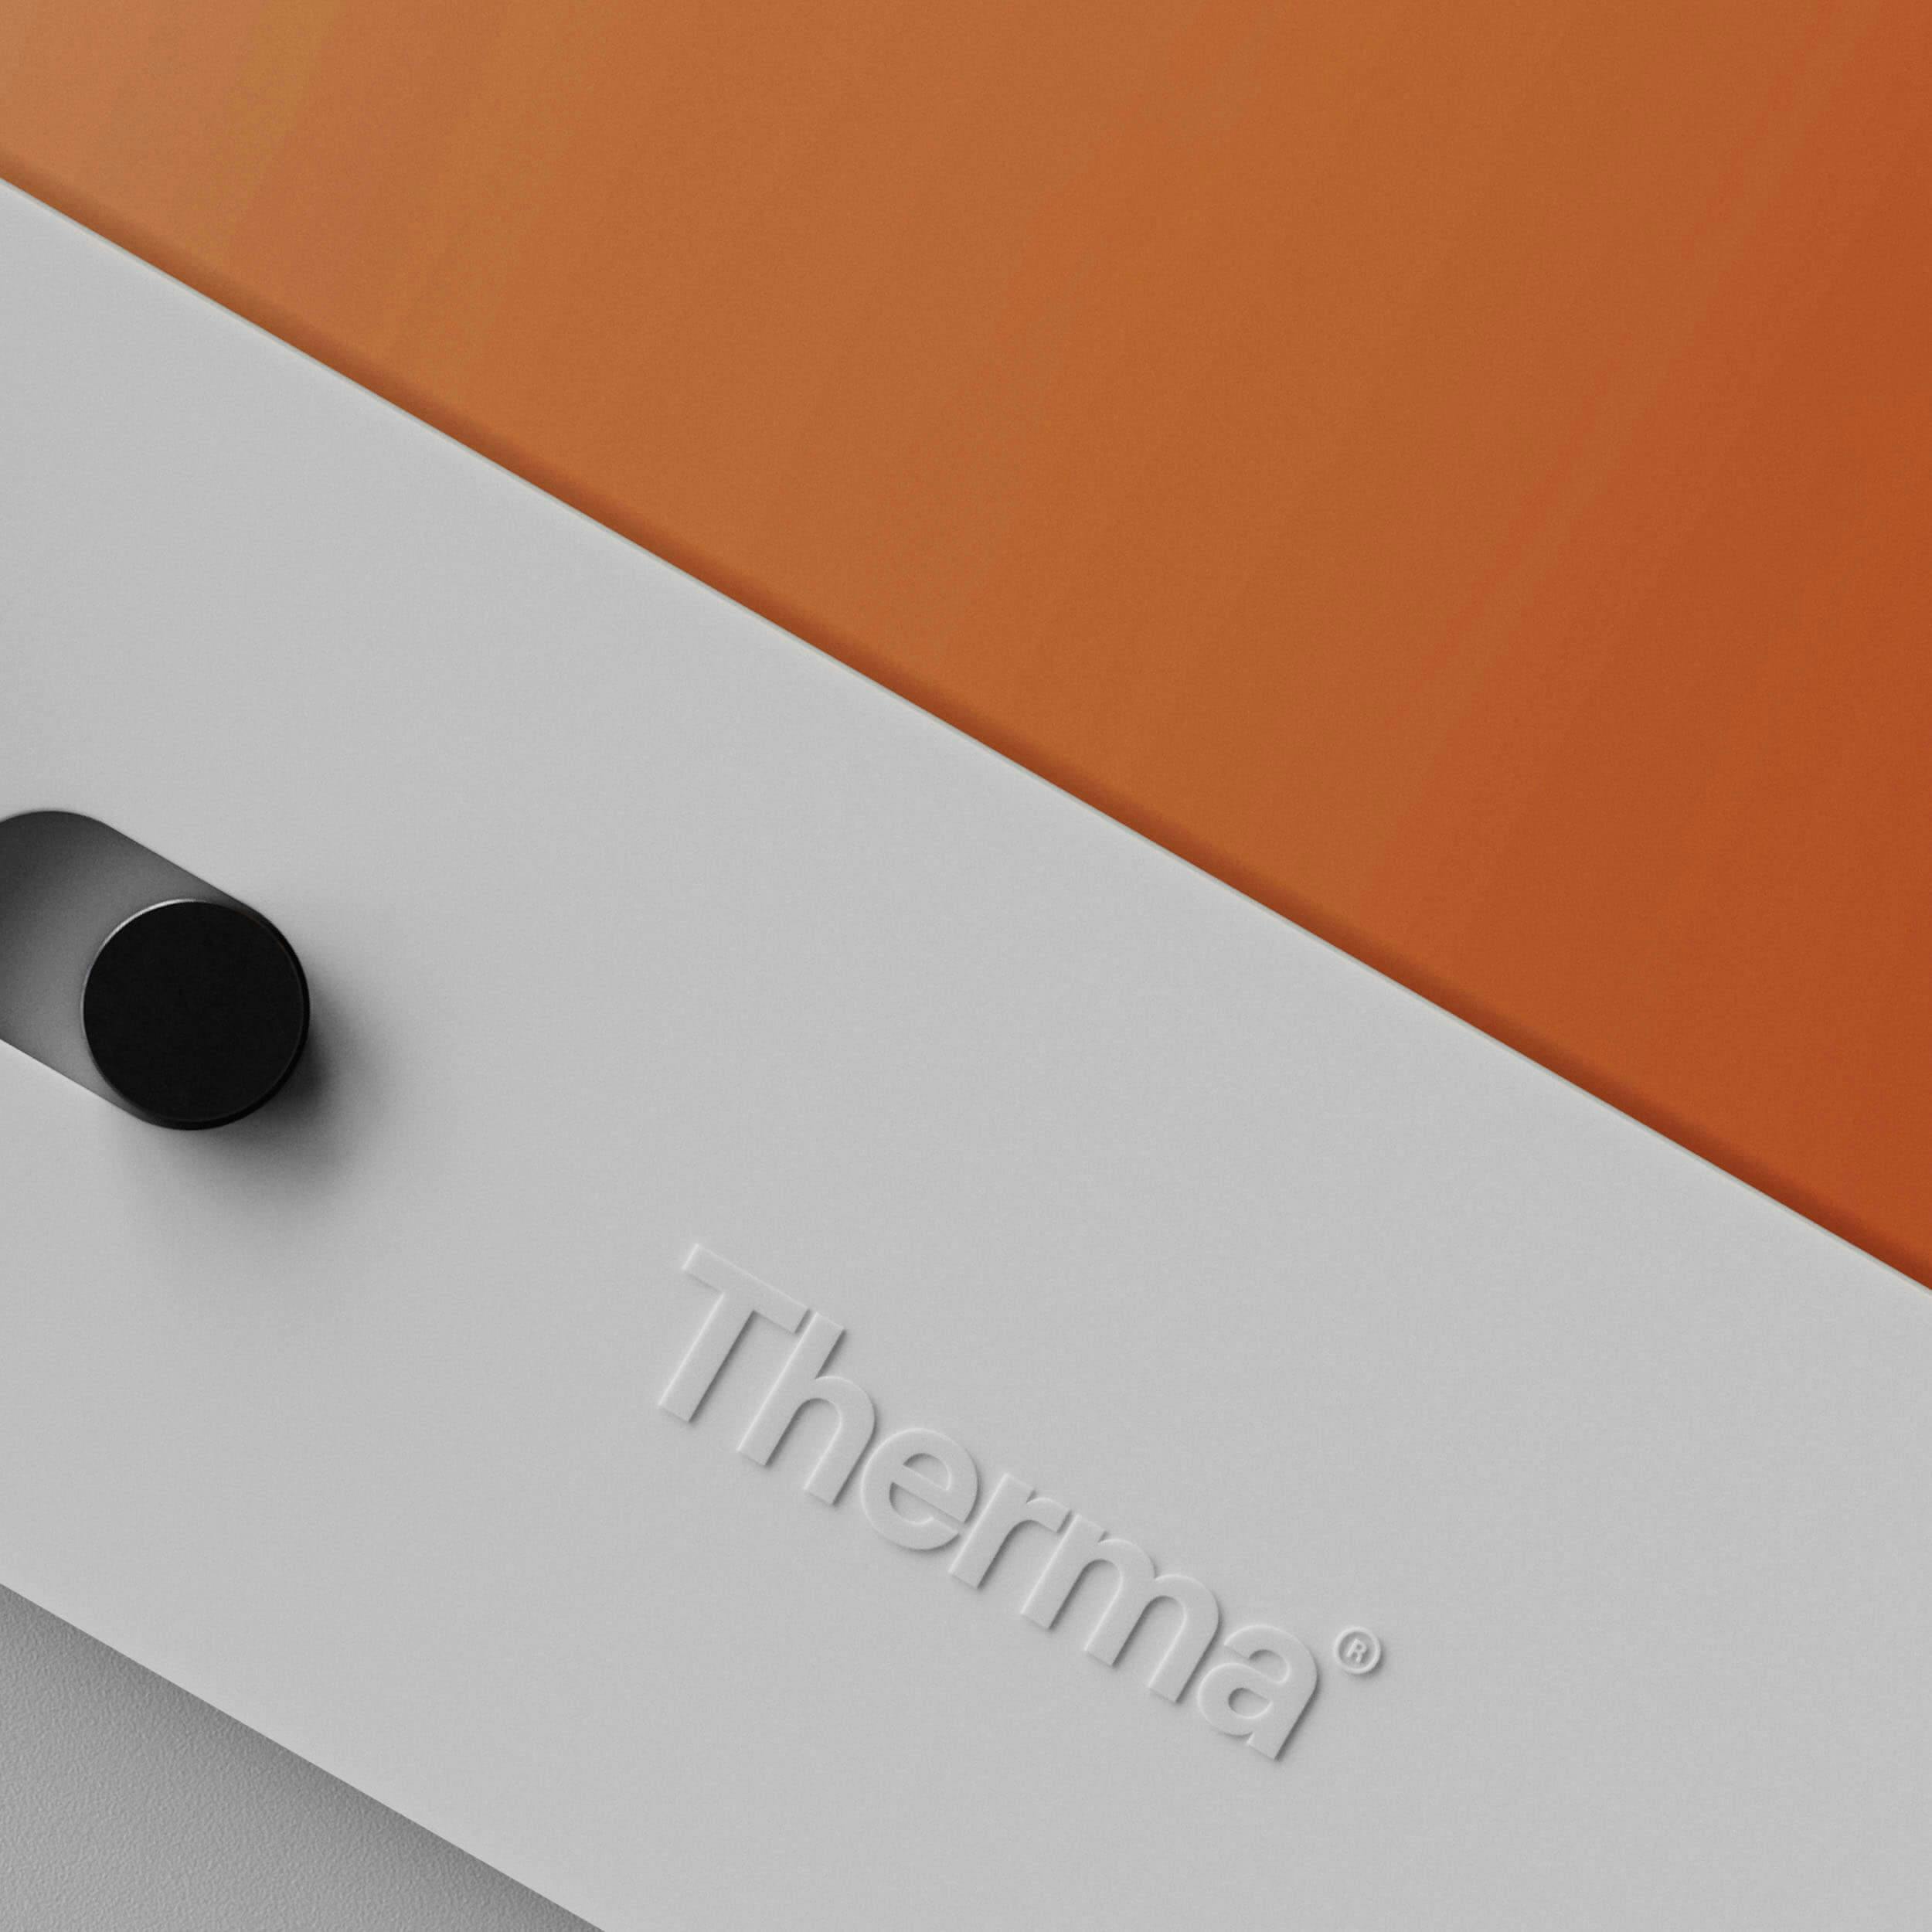 Therma - Packaging Design Rendering